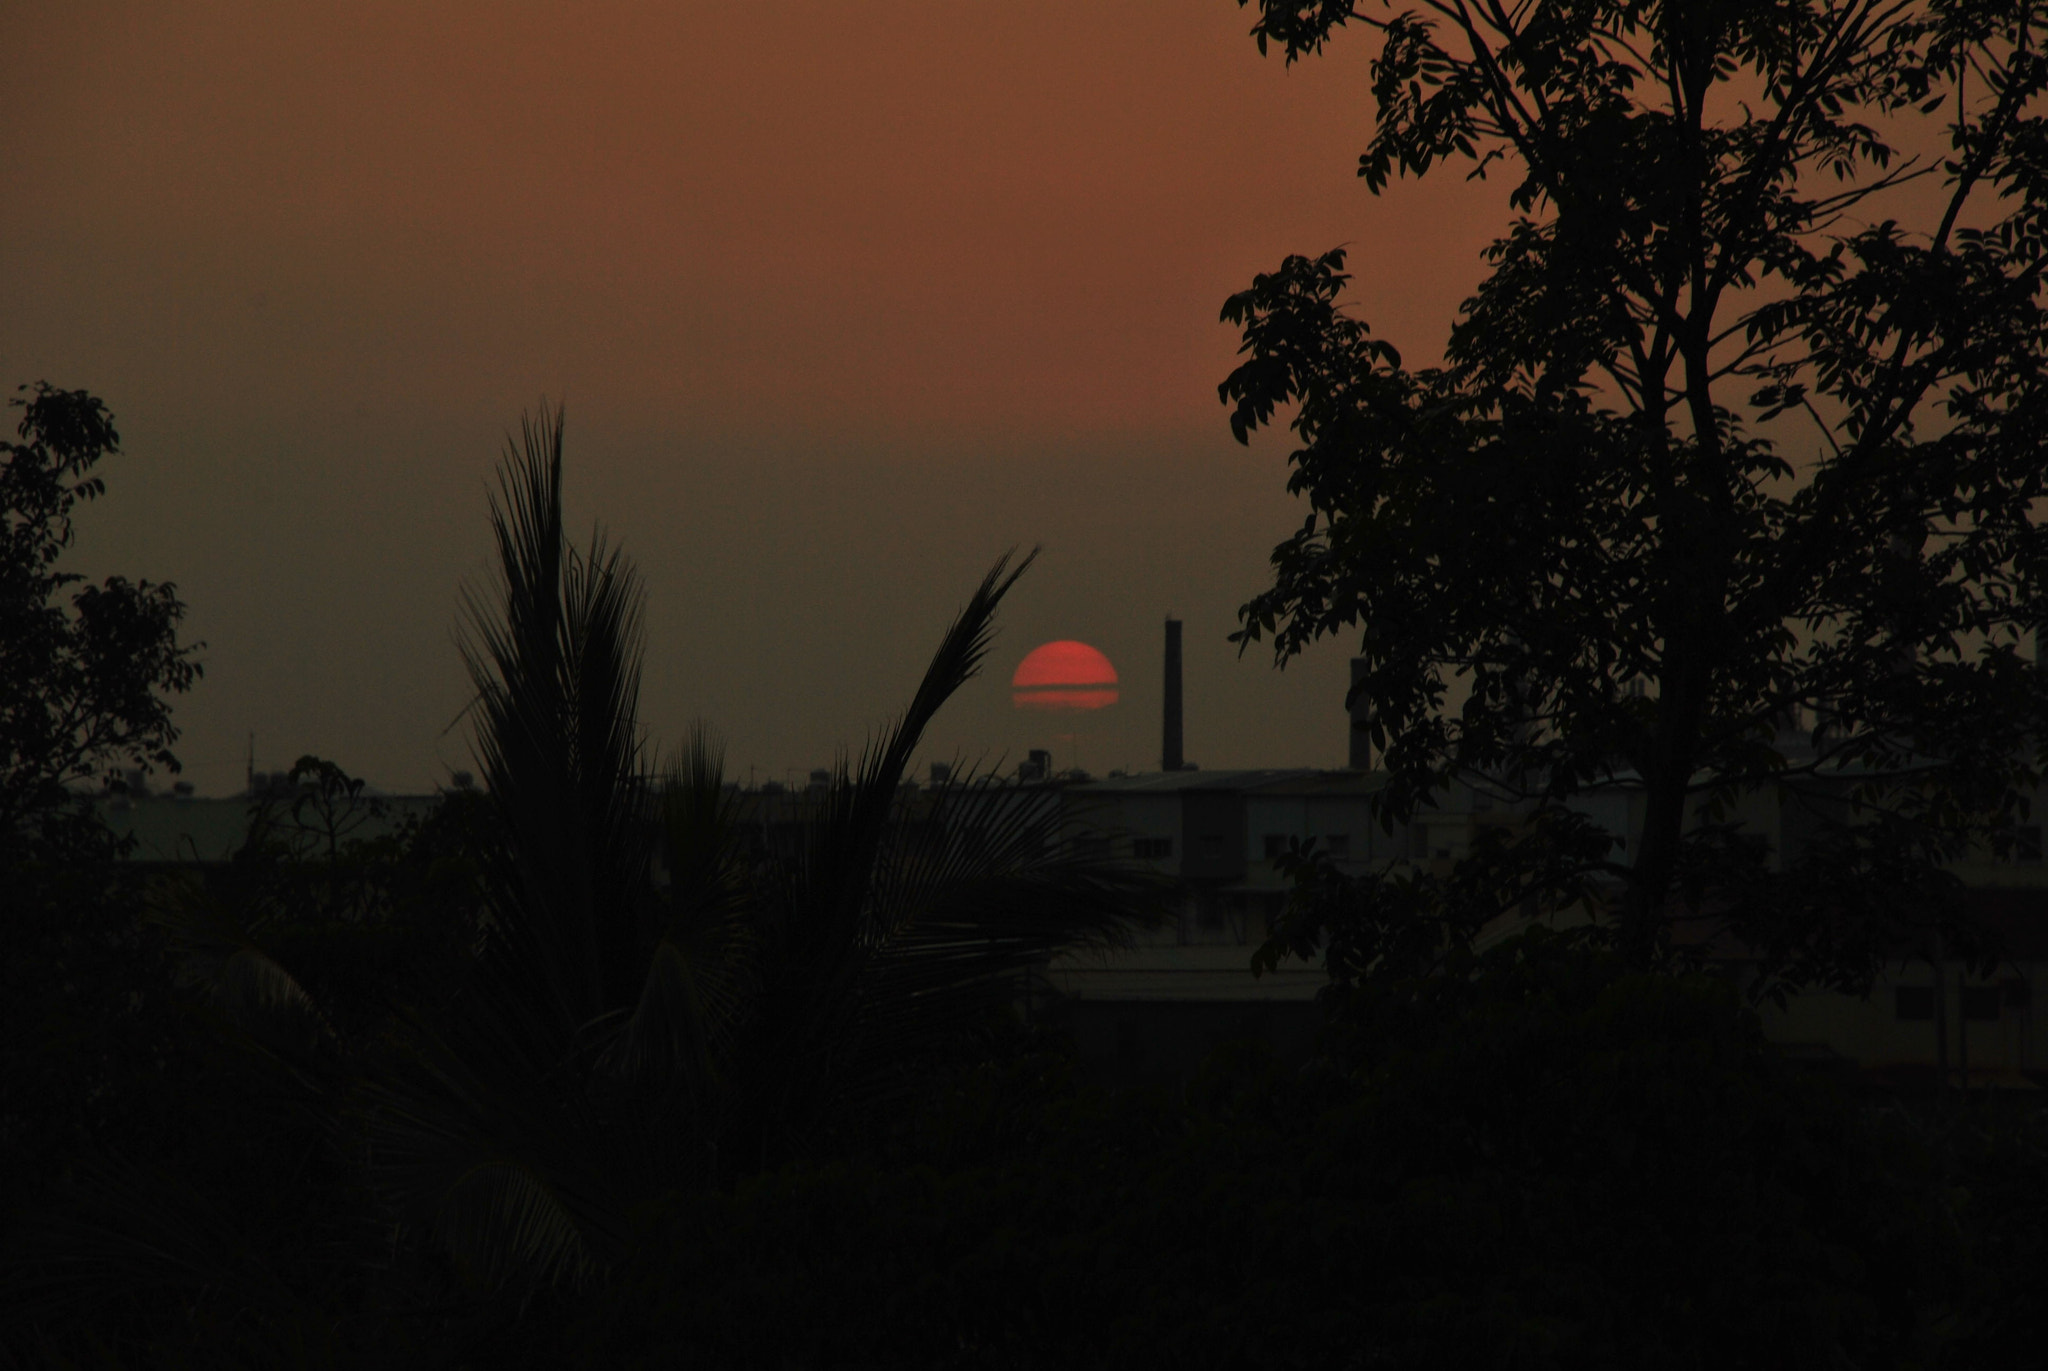 Nikon D3000 sample photo. Sunset photography